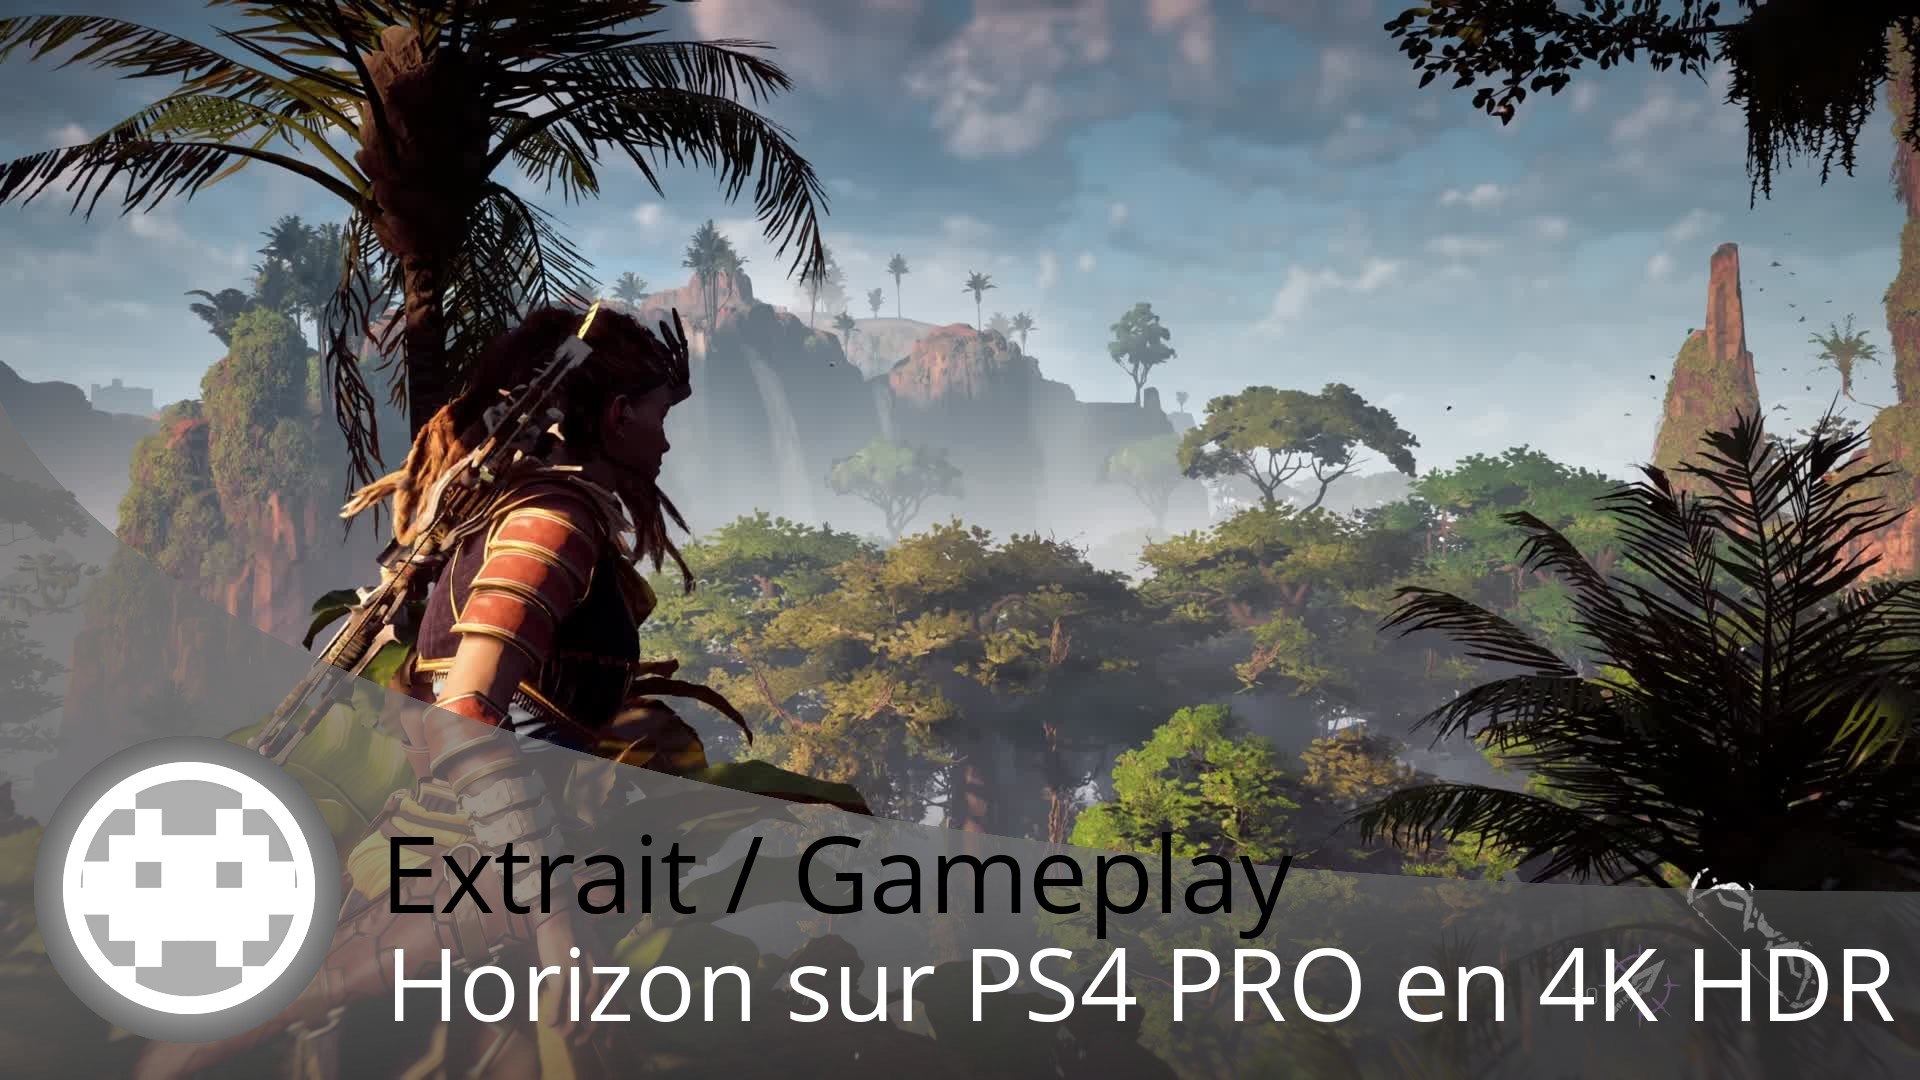 Horizon: Zero Dawn - Gameplay PS4 Pro - Video Dailymotion